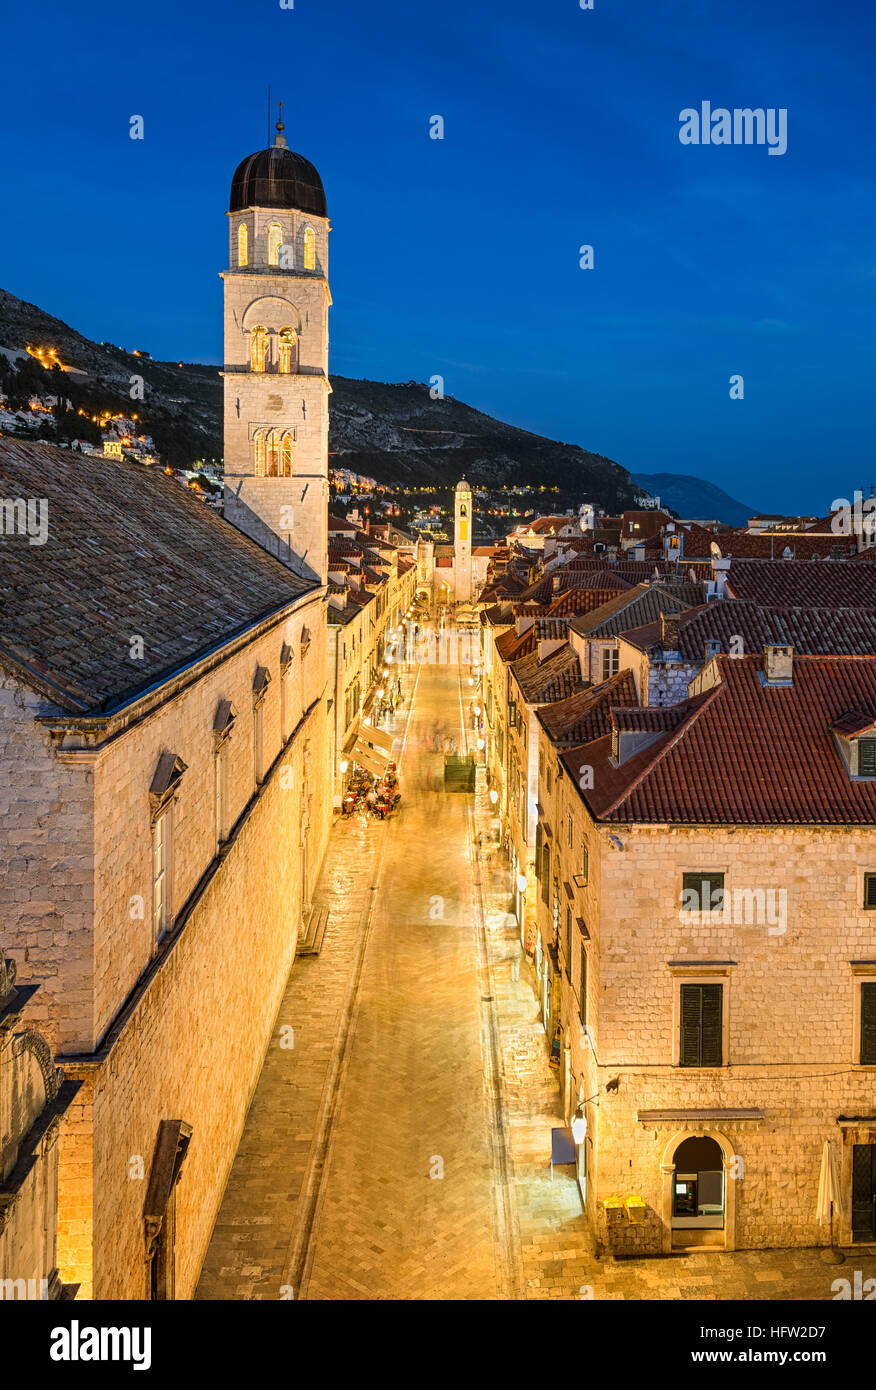 Vieille ville de Dubrovnik, Croatie, la nuit Banque D'Images